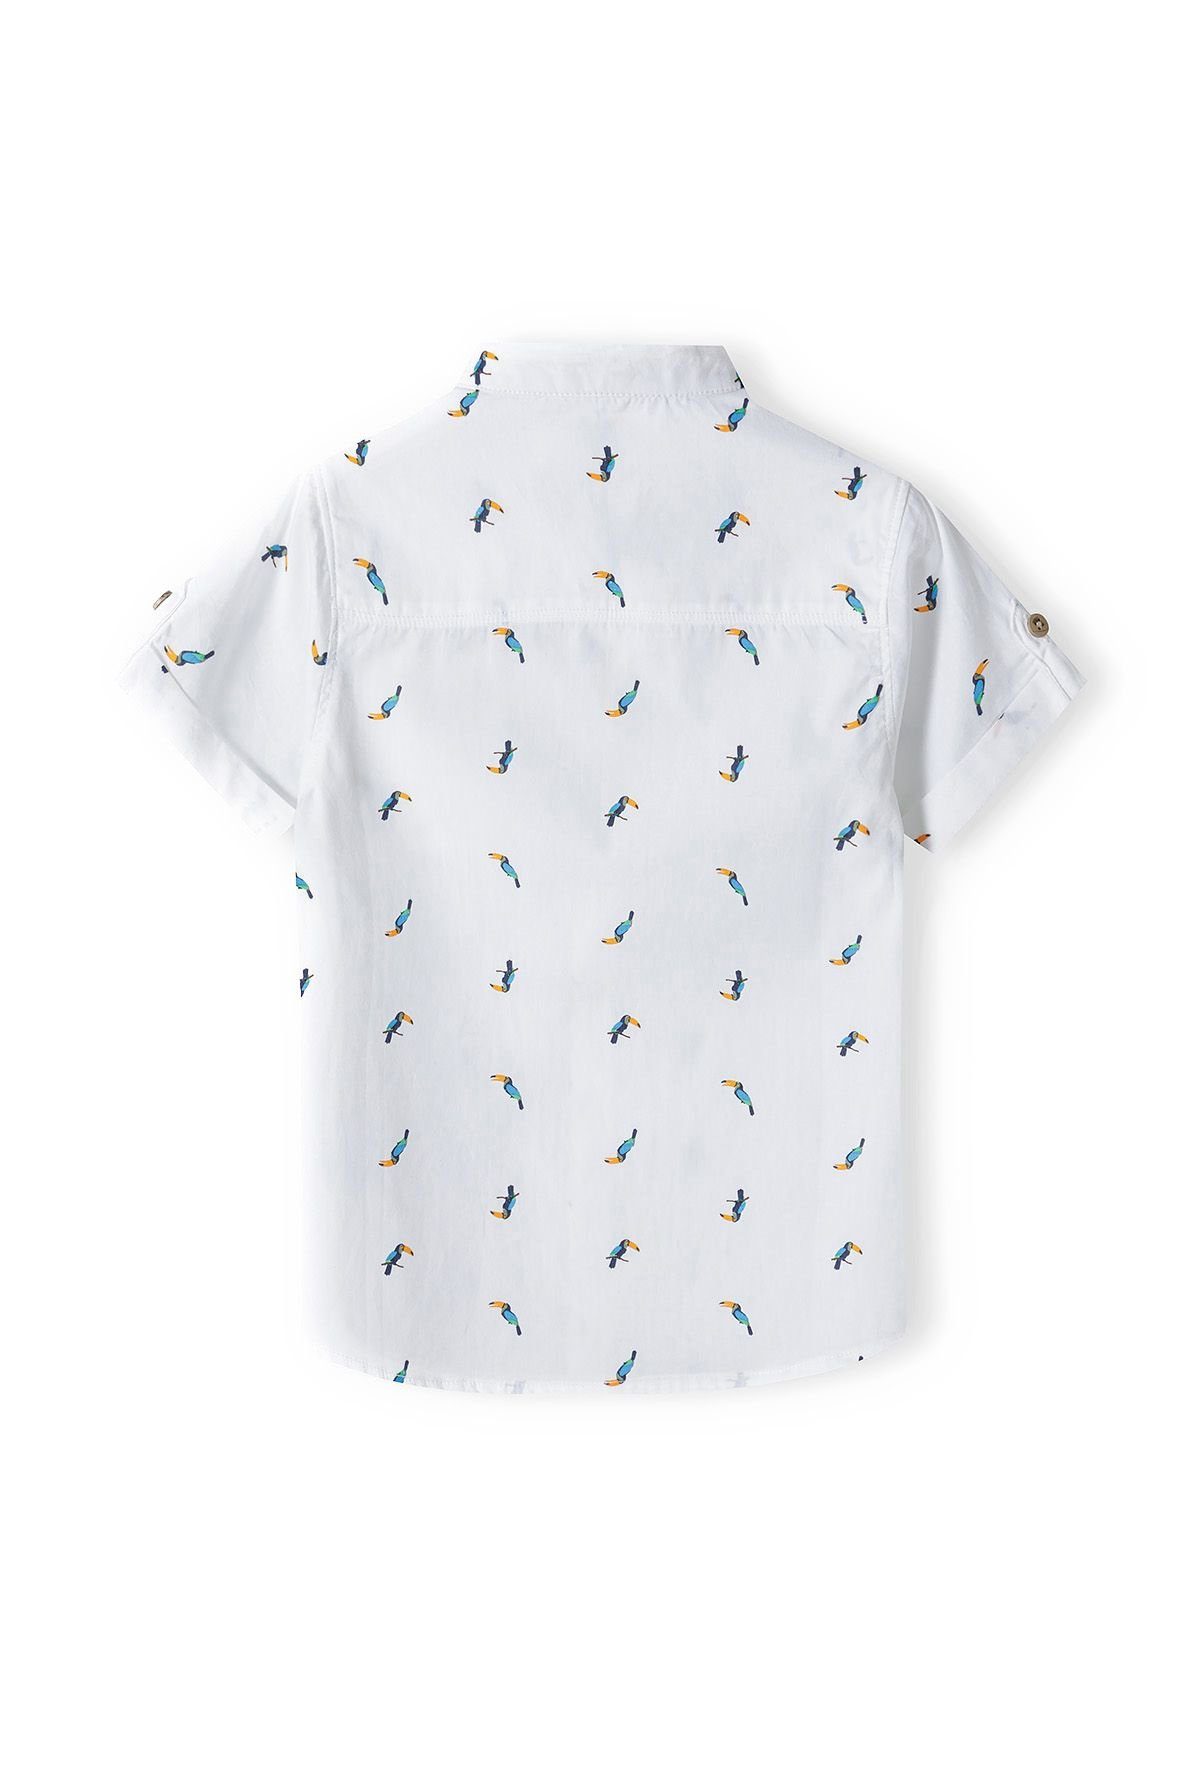 Kragen MINOTI Kurzarmhemd (12m-8y) Hemd ohne